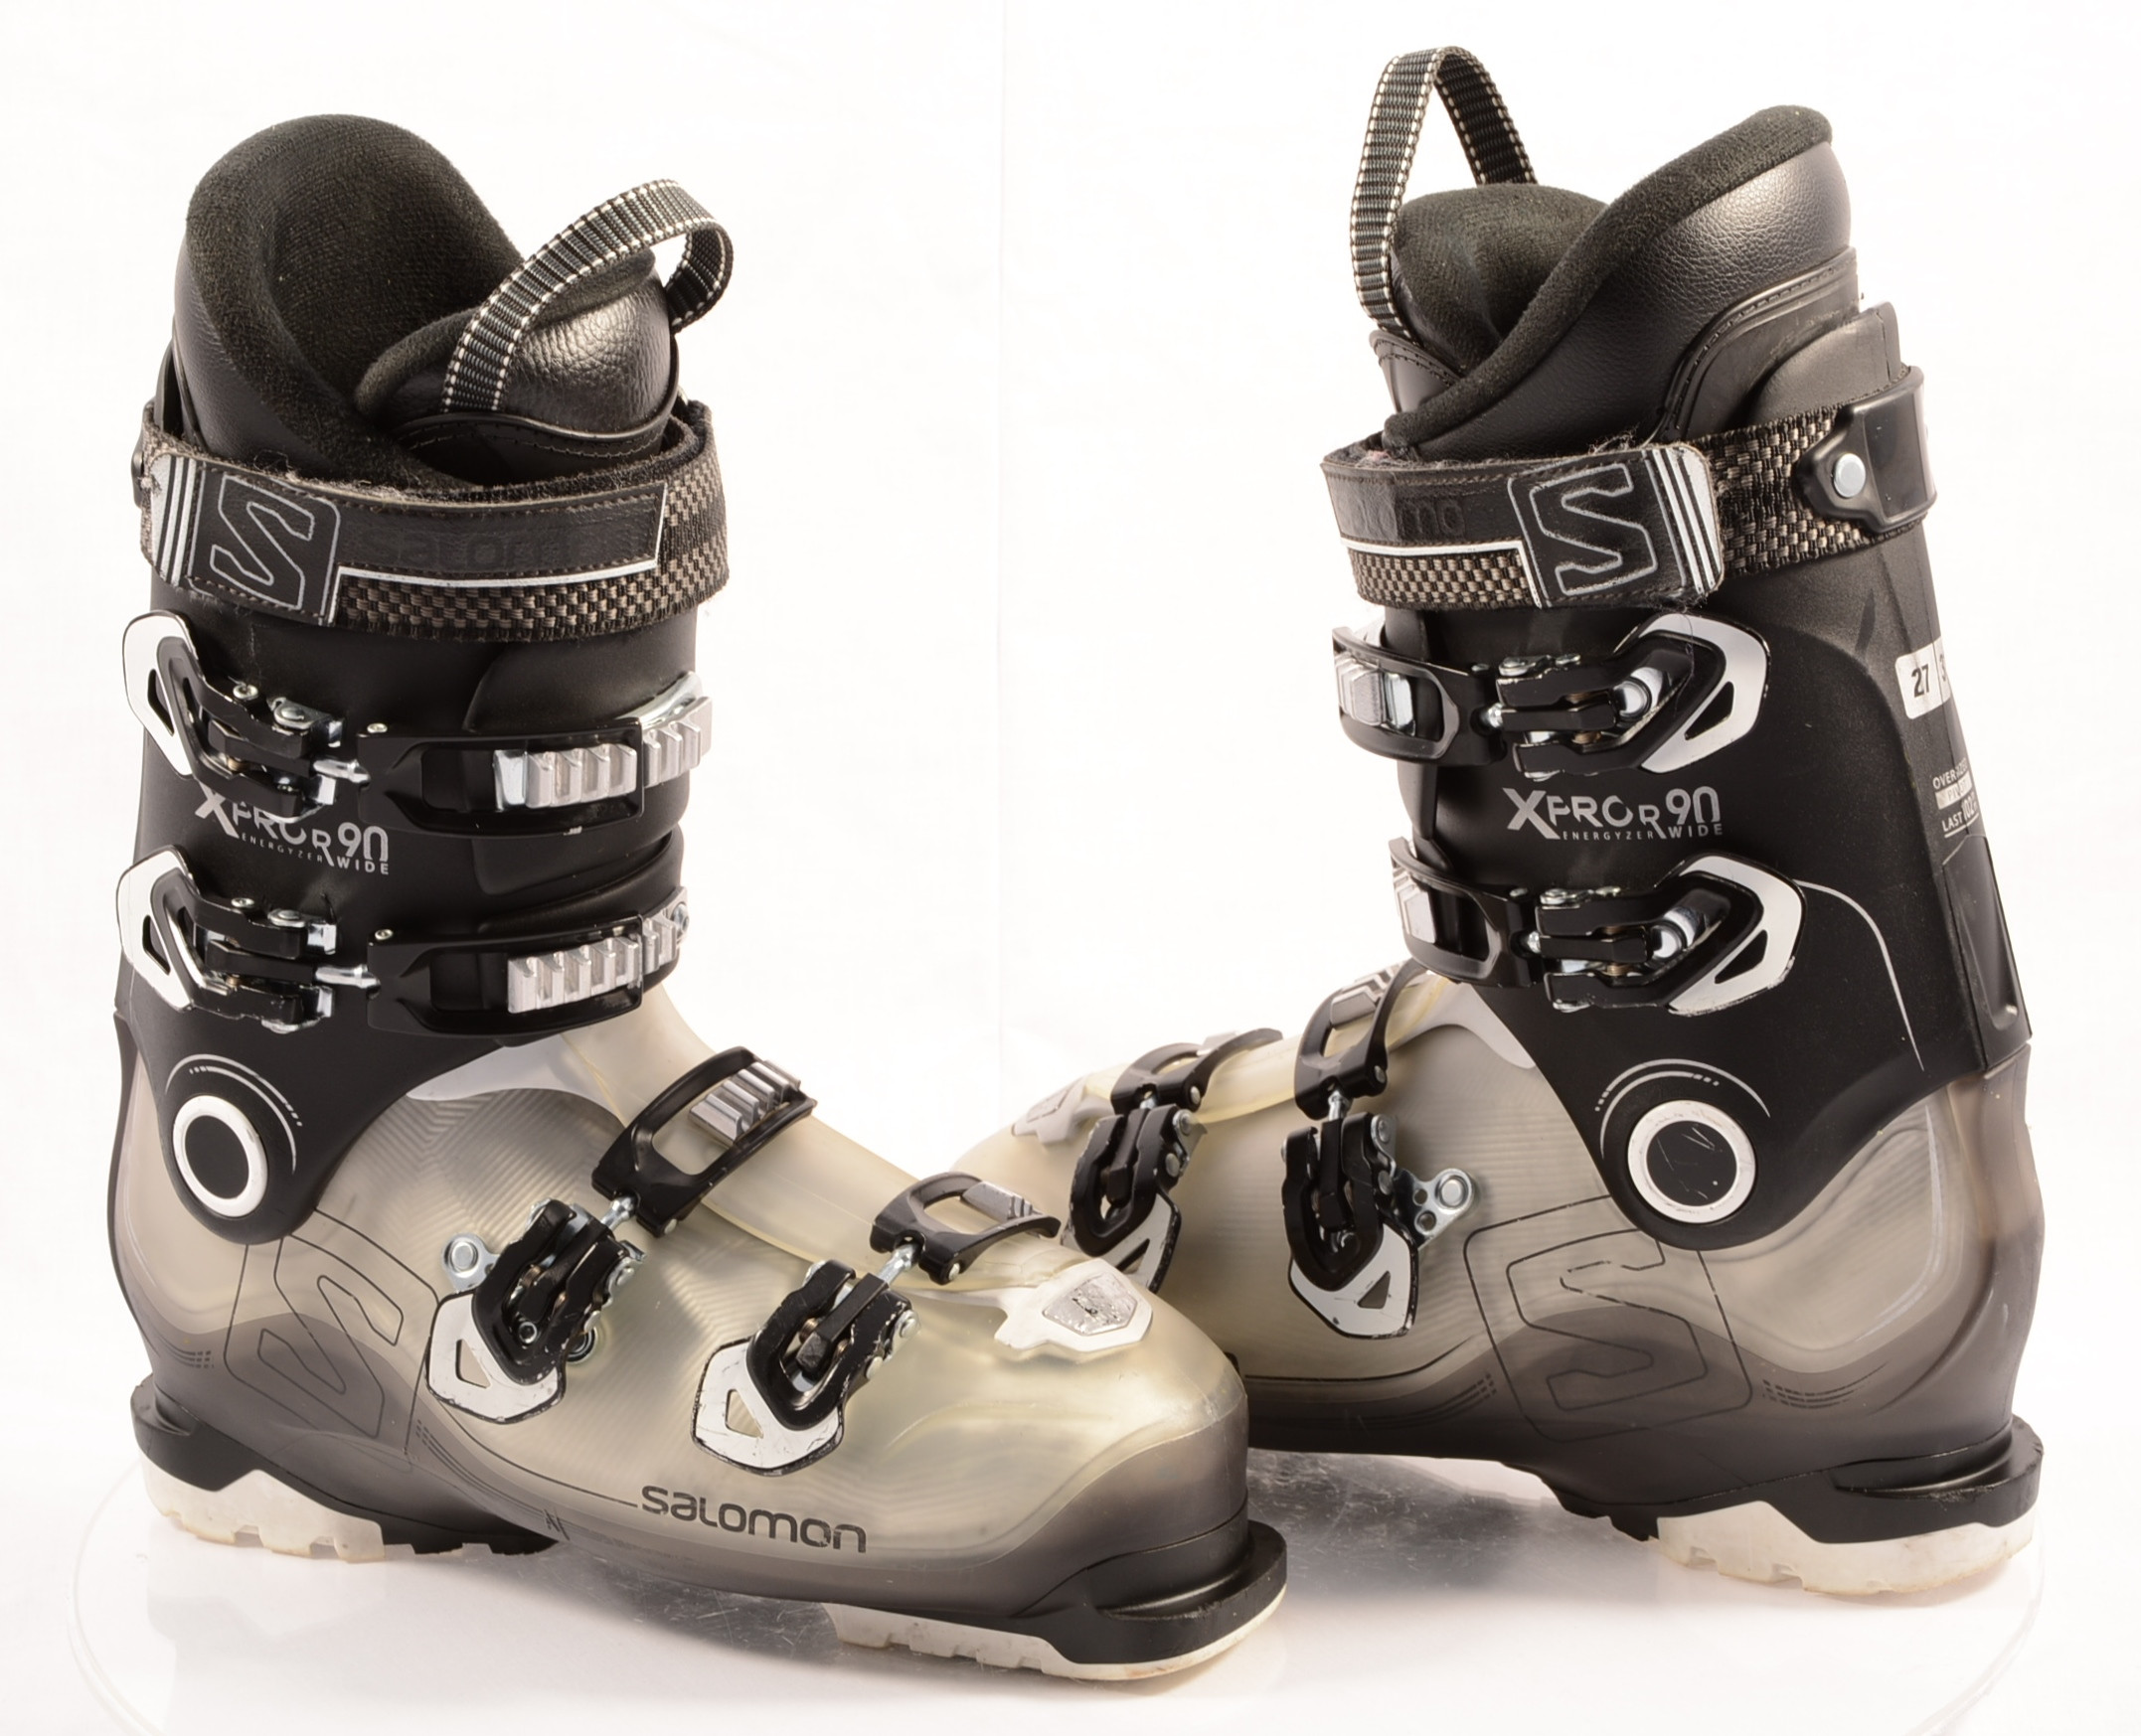 Op het randje Persona verbergen ski boots SALOMON X PRO R90 WIDE, ENERGYZER 90, OVERSIZED pivot, Micro,  macro - Mardosport.com